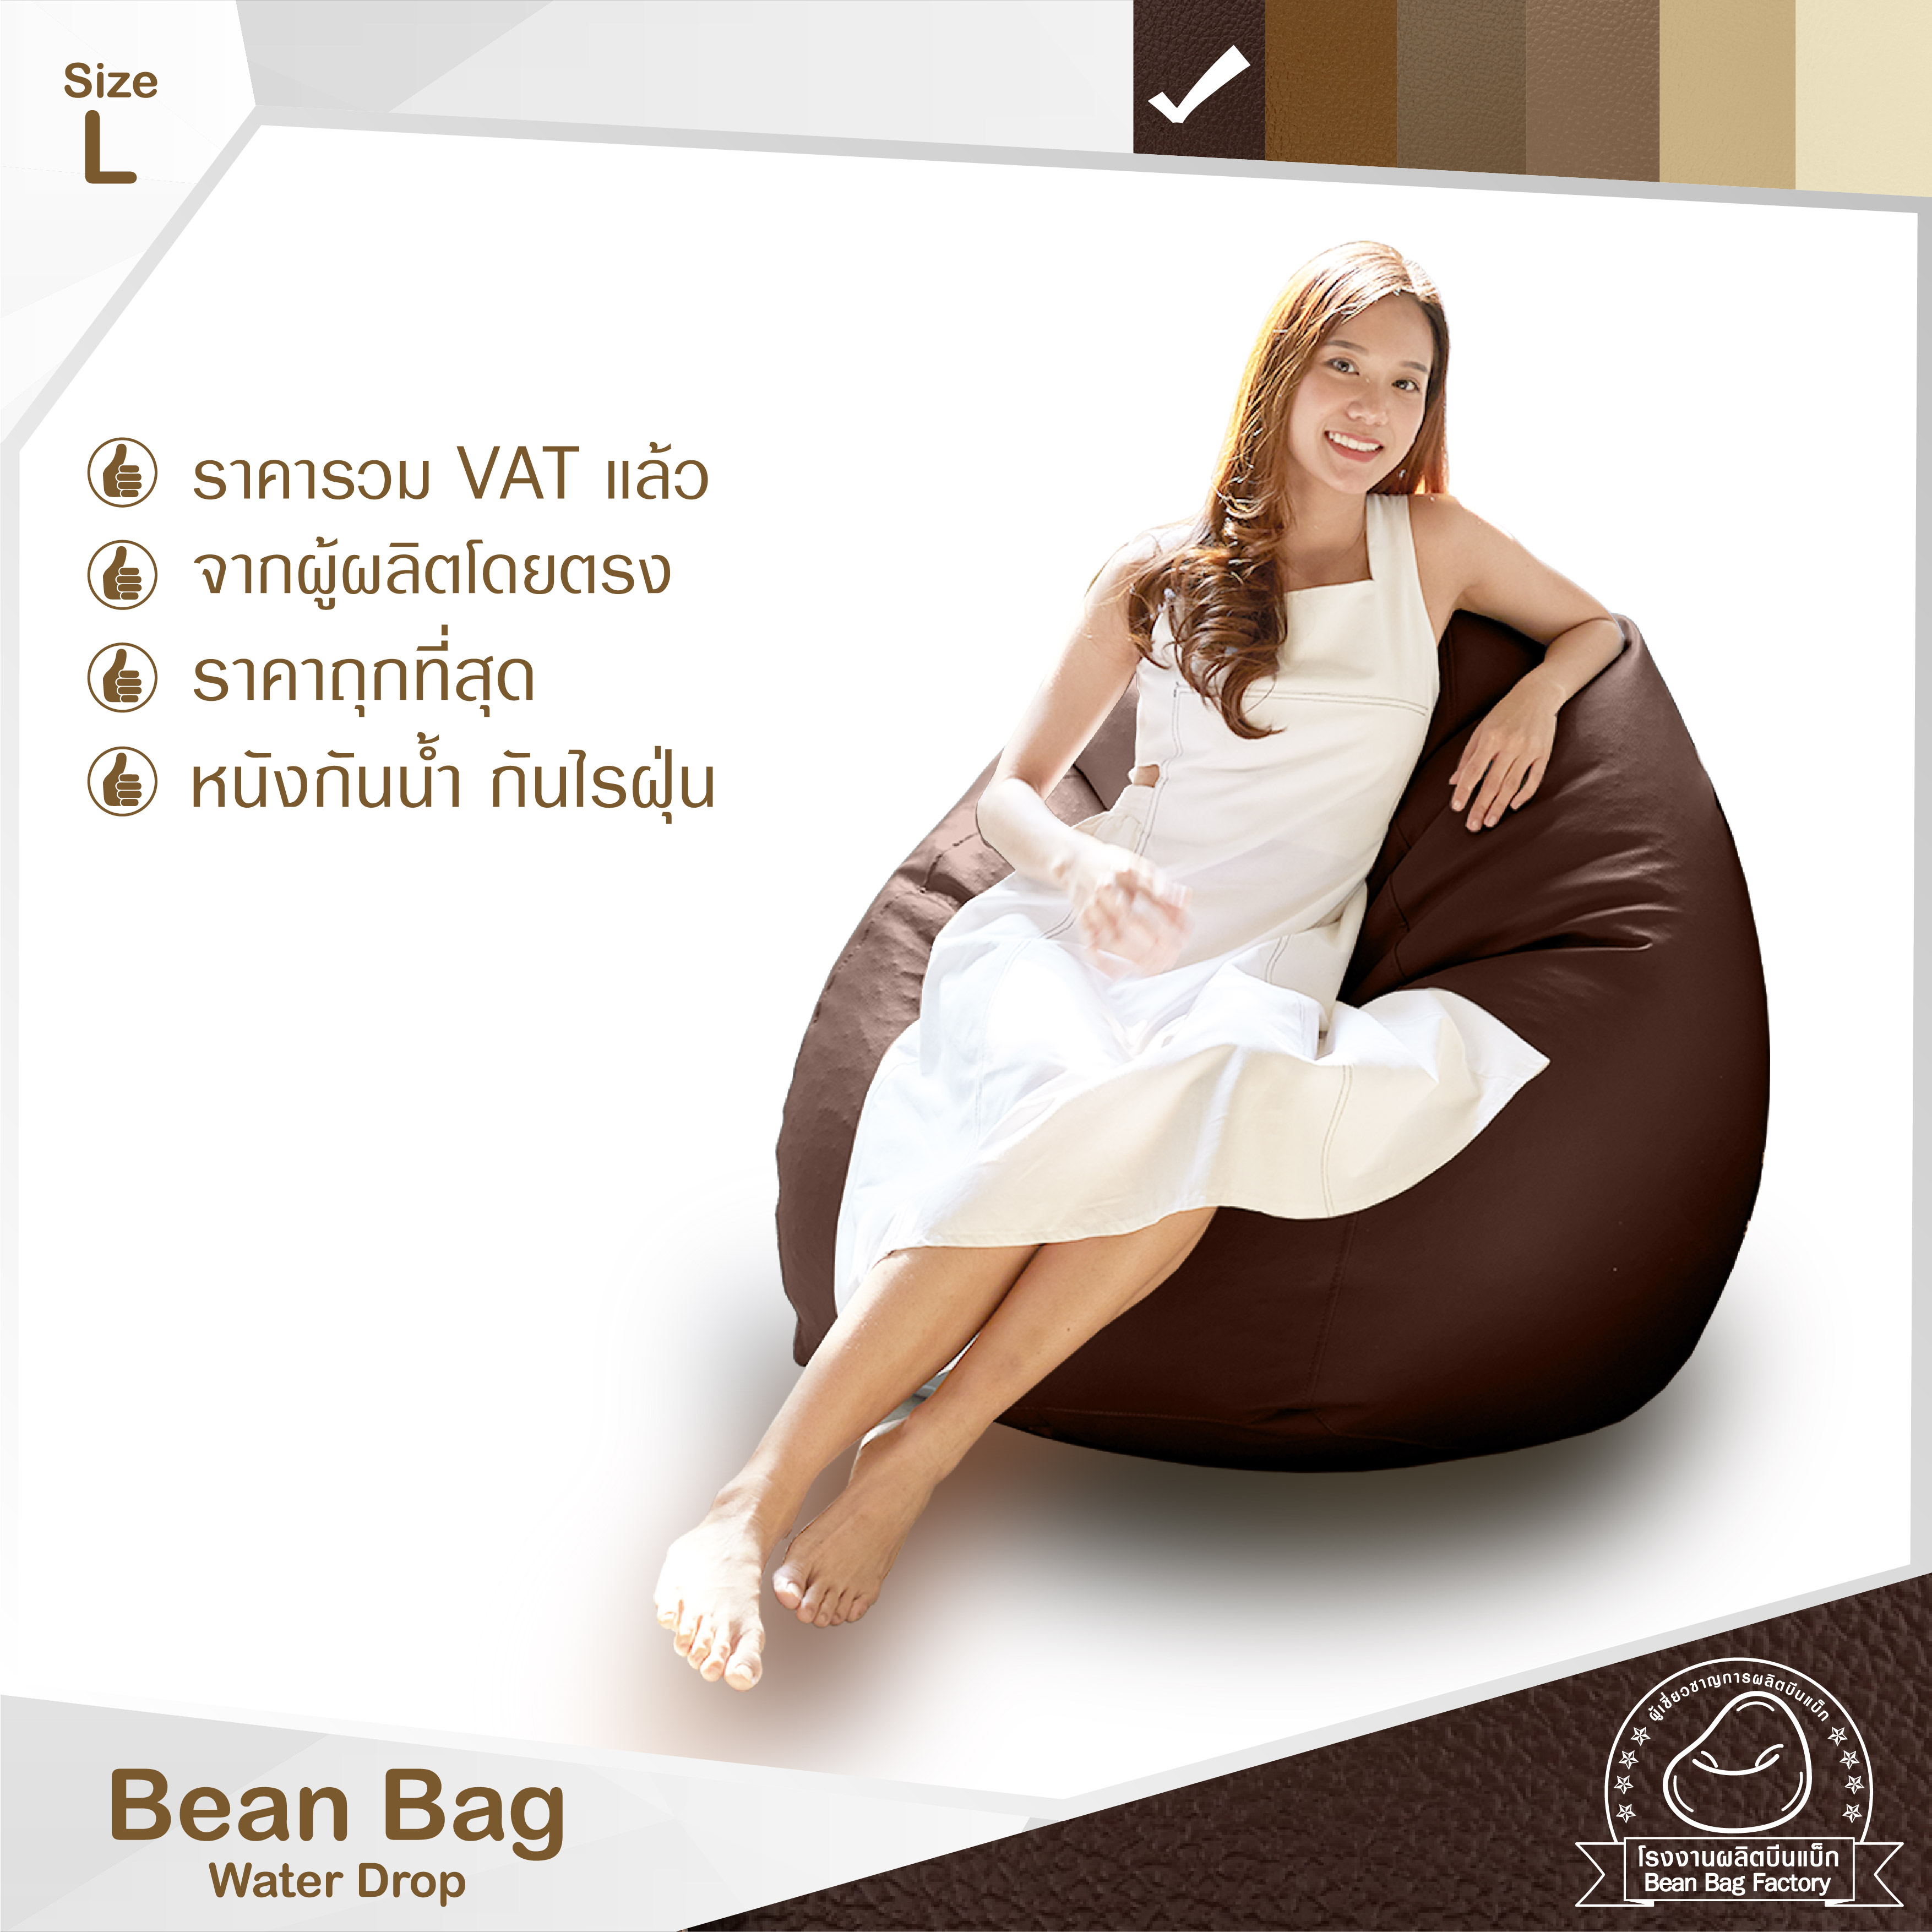 Bean Bag Factory ทรงหยดน้ำ ถูกเยอะดี บีนแบคหนัง จากโรงงาน พร้อมเม็ดโฟม ผลิตในประเทศ Coffee and Cream โทนน้ำตาล แทน ครีม